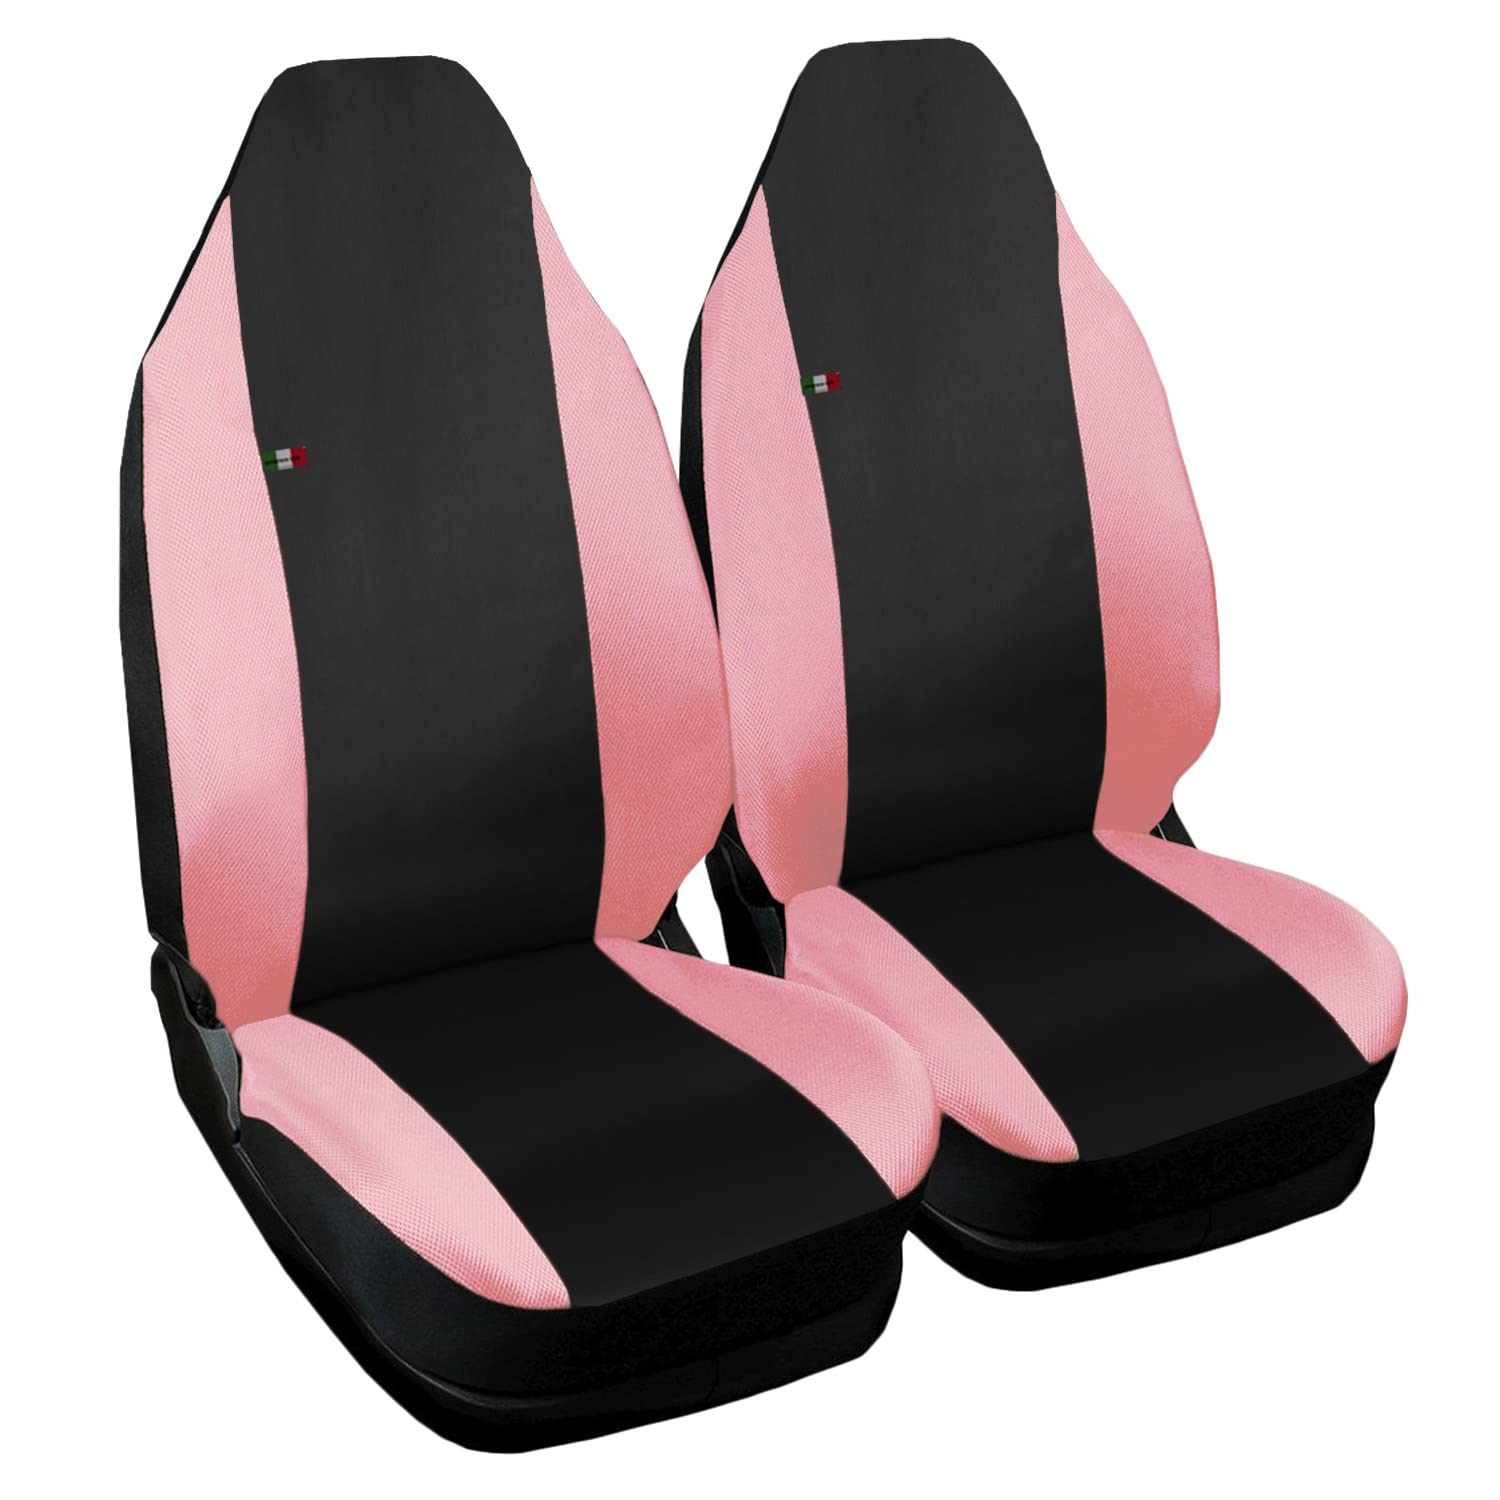 Smart zweifarbige Sitzbezüge - Weibliche Linie - schwarz rosa von Lupex Shop